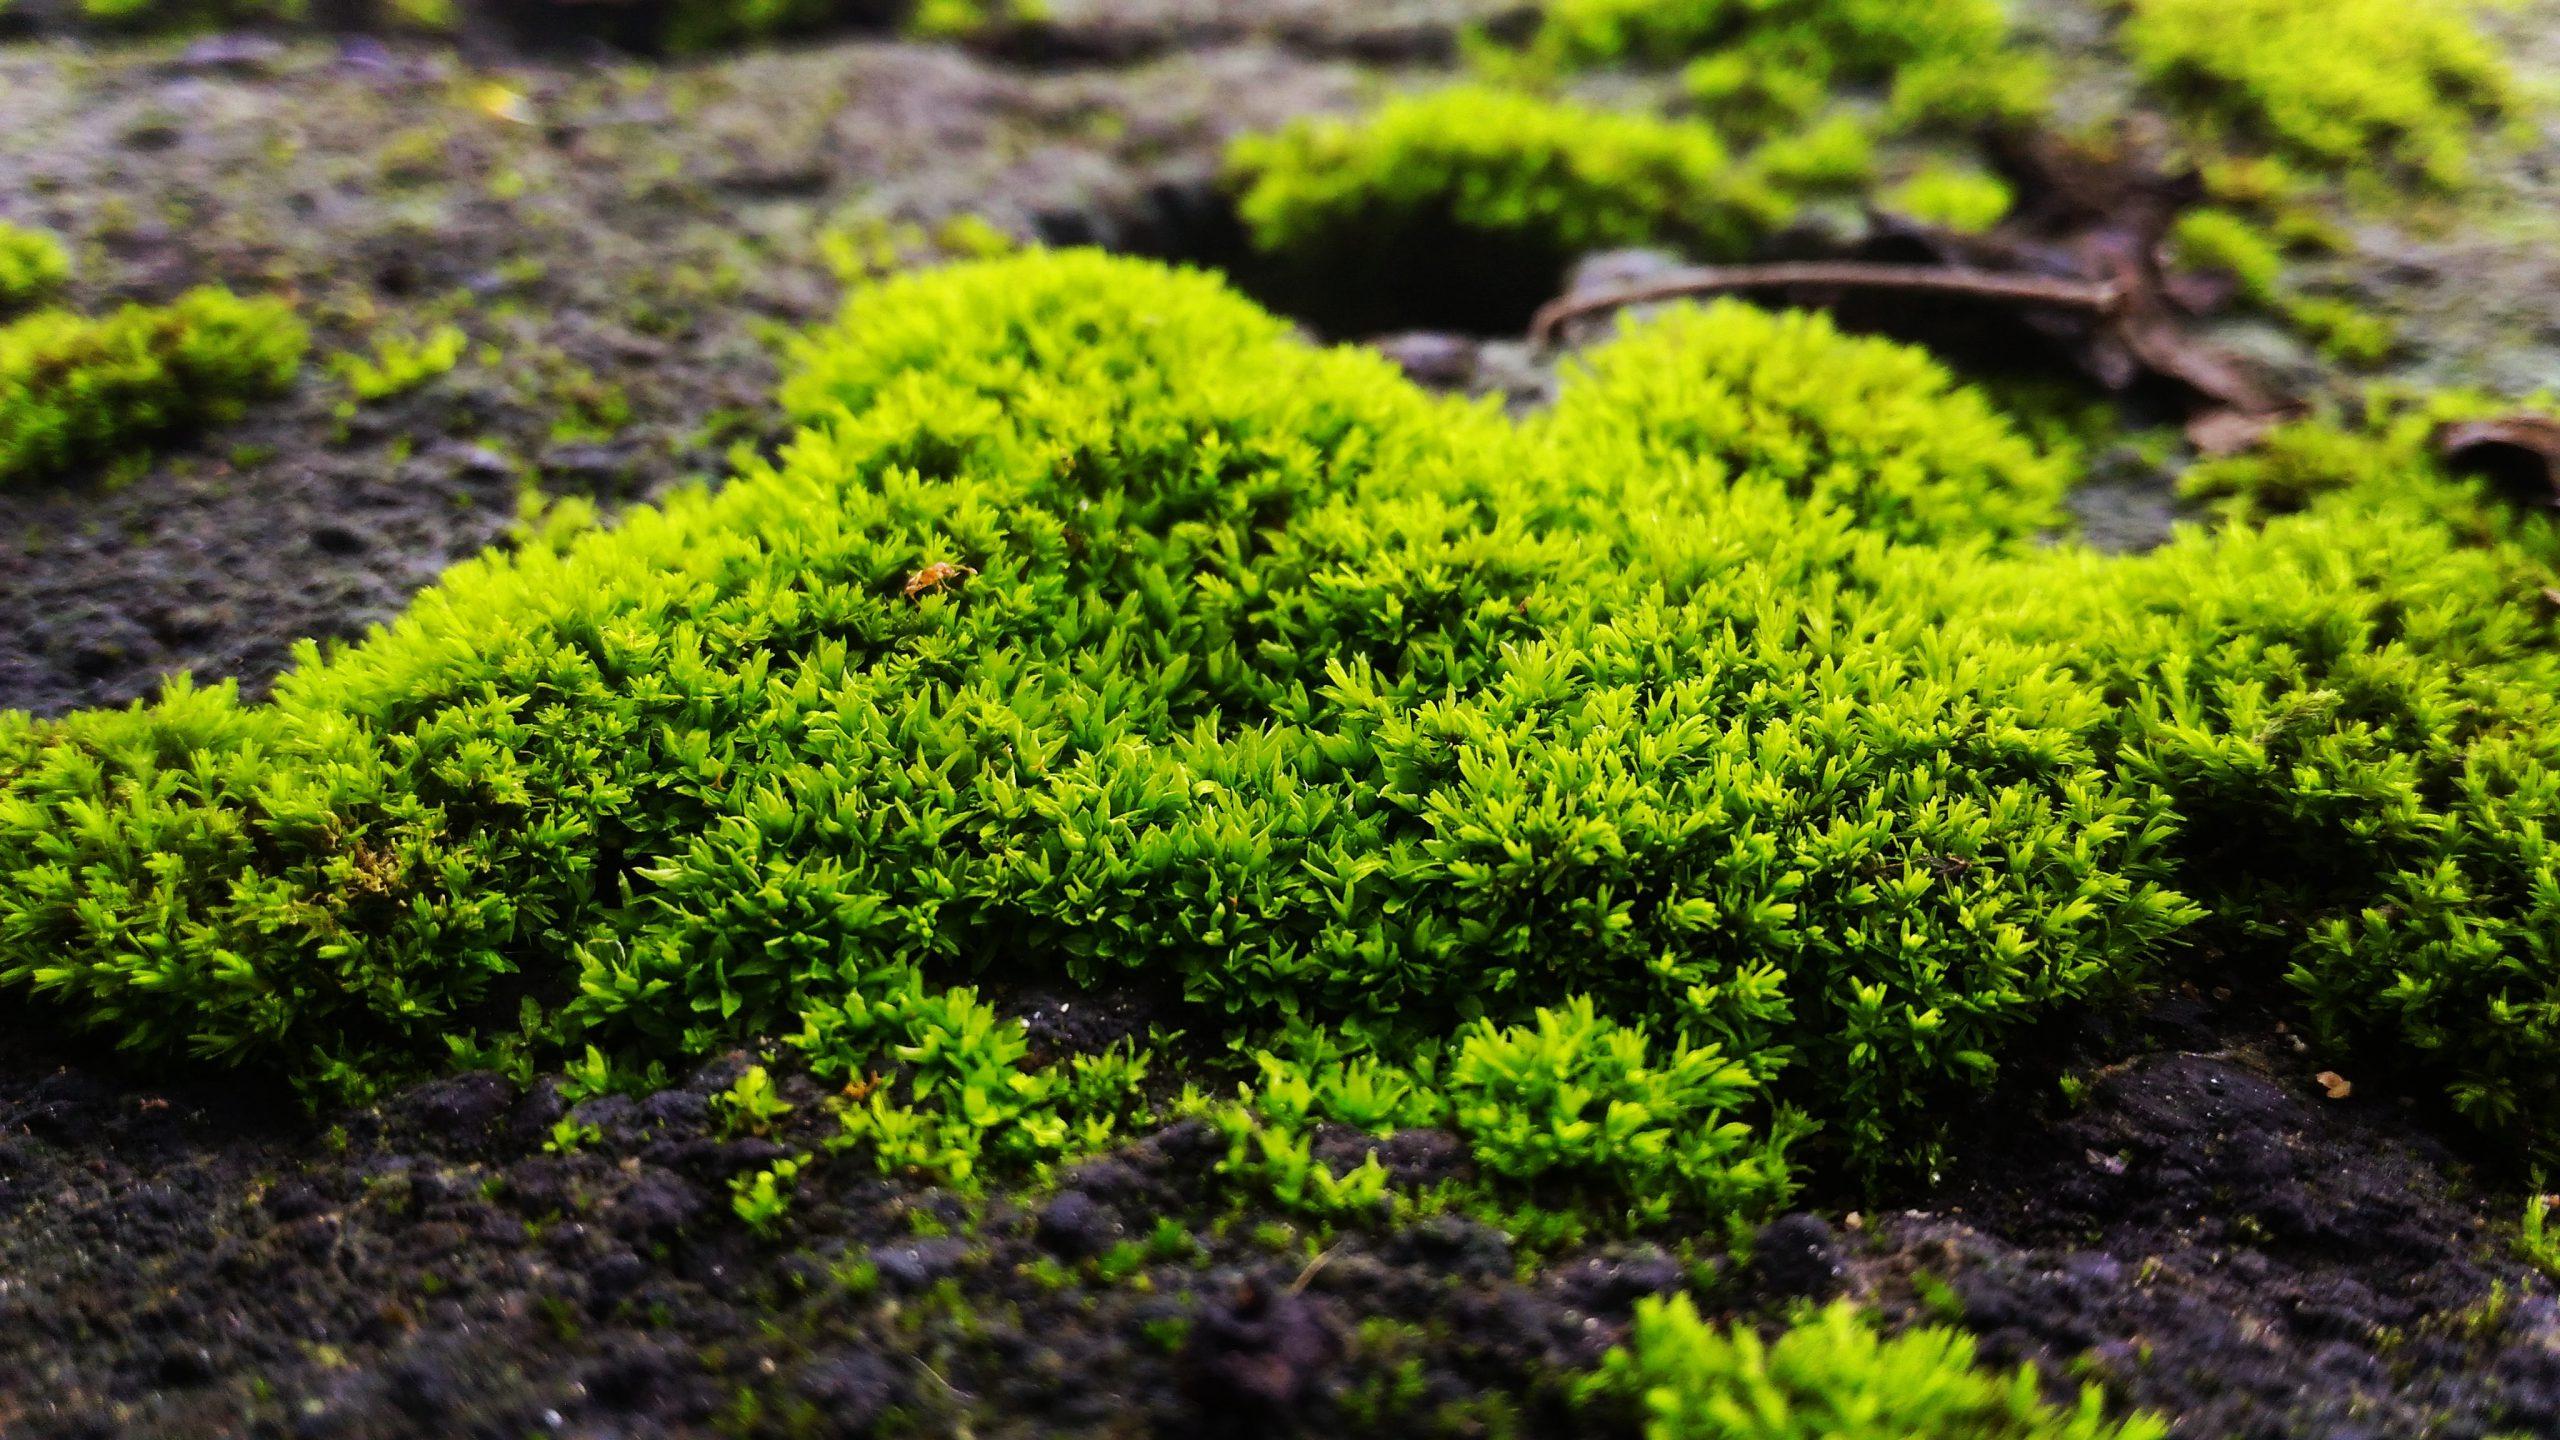 peat-moss-vs-sphagnum-moss-02-closeup-view-scaled.jpeg